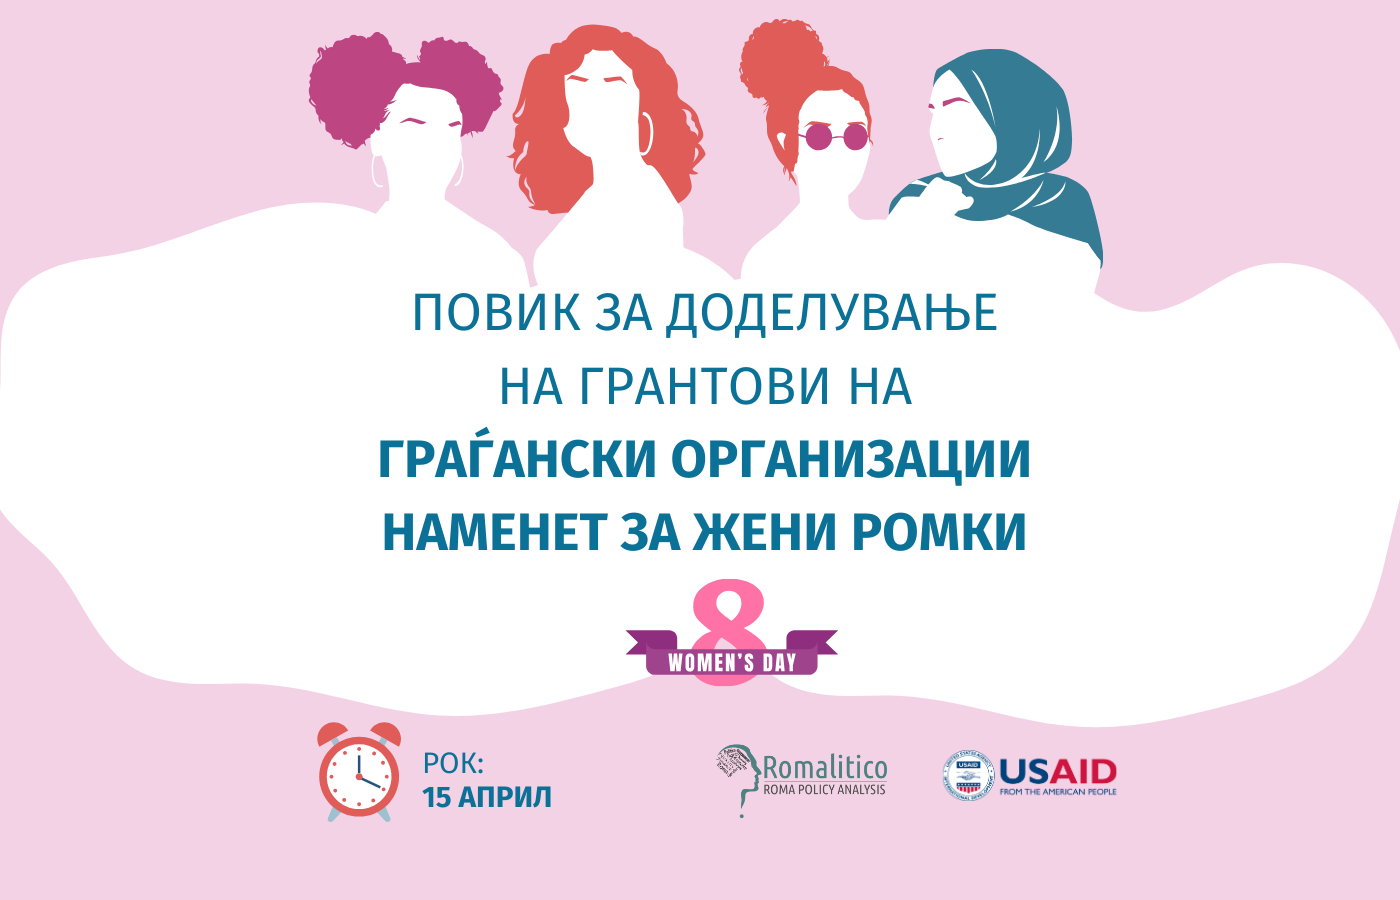 Повик за доделување на грантови на граѓански организации наменет за жени Ромки